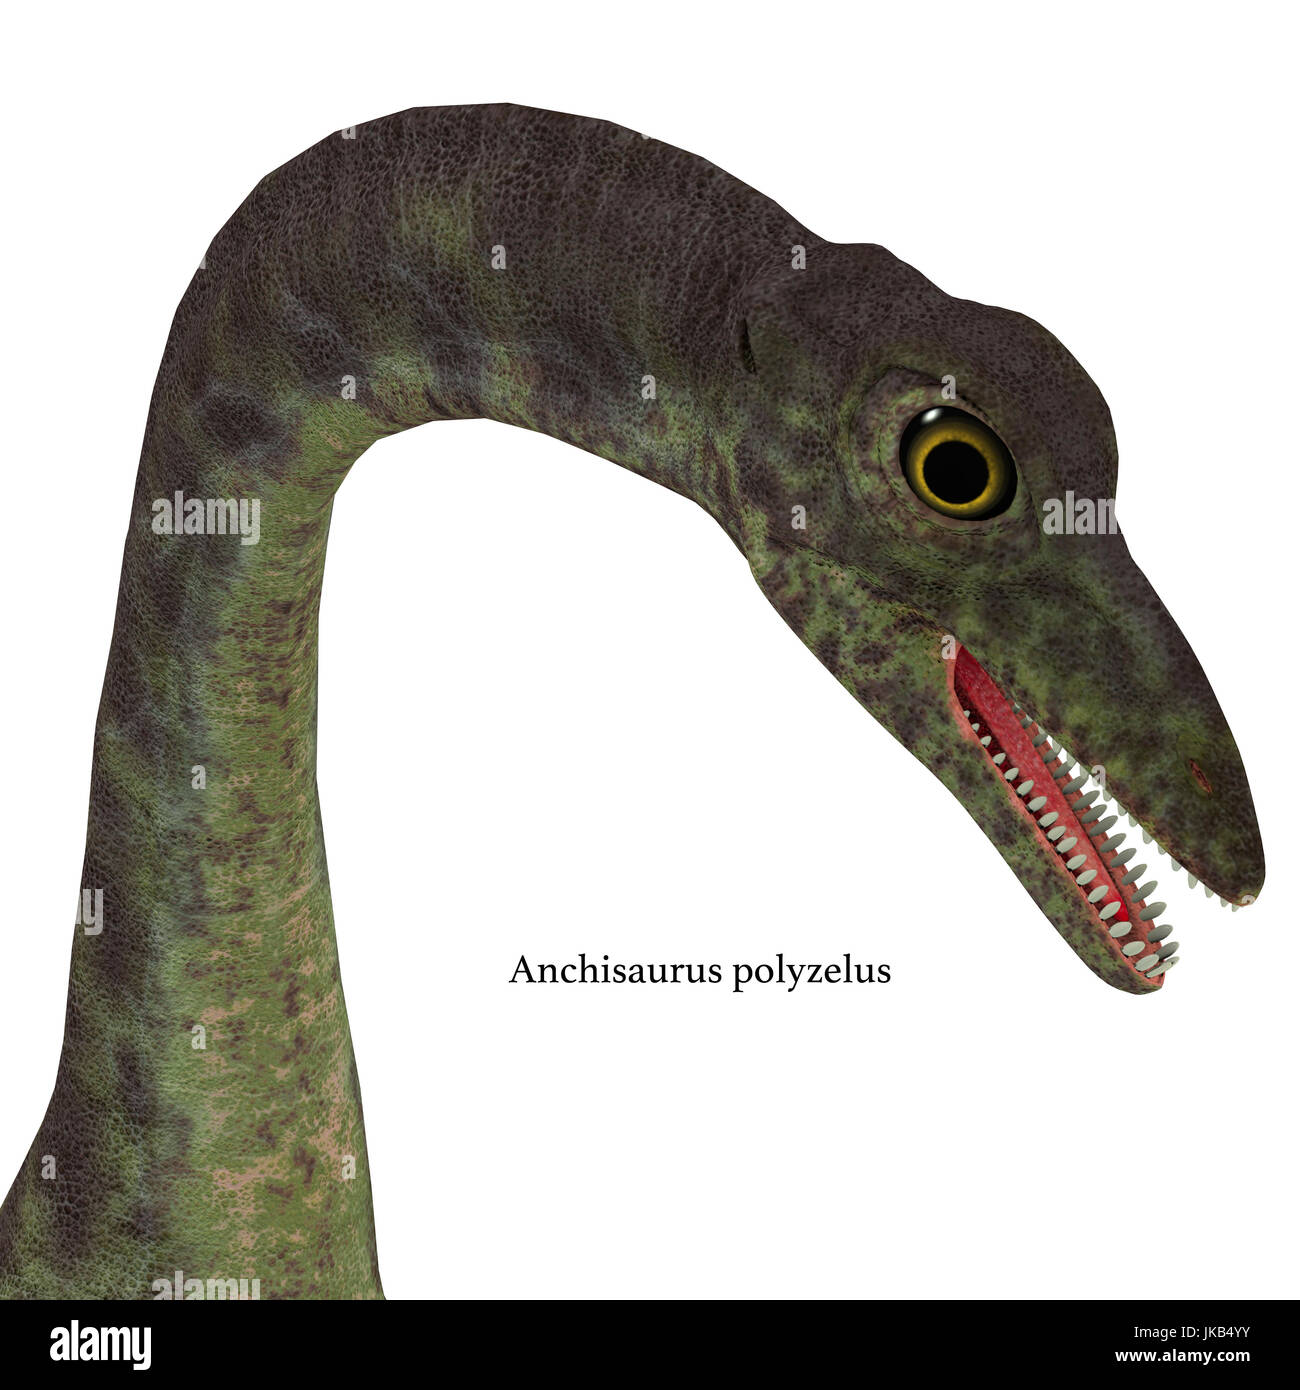 Anchisaurus war ein Allesfresser prosauropod Dinosaurier, der in der Jurassic Perioden von Nordamerika, Europa und Afrika lebte. Stockfoto